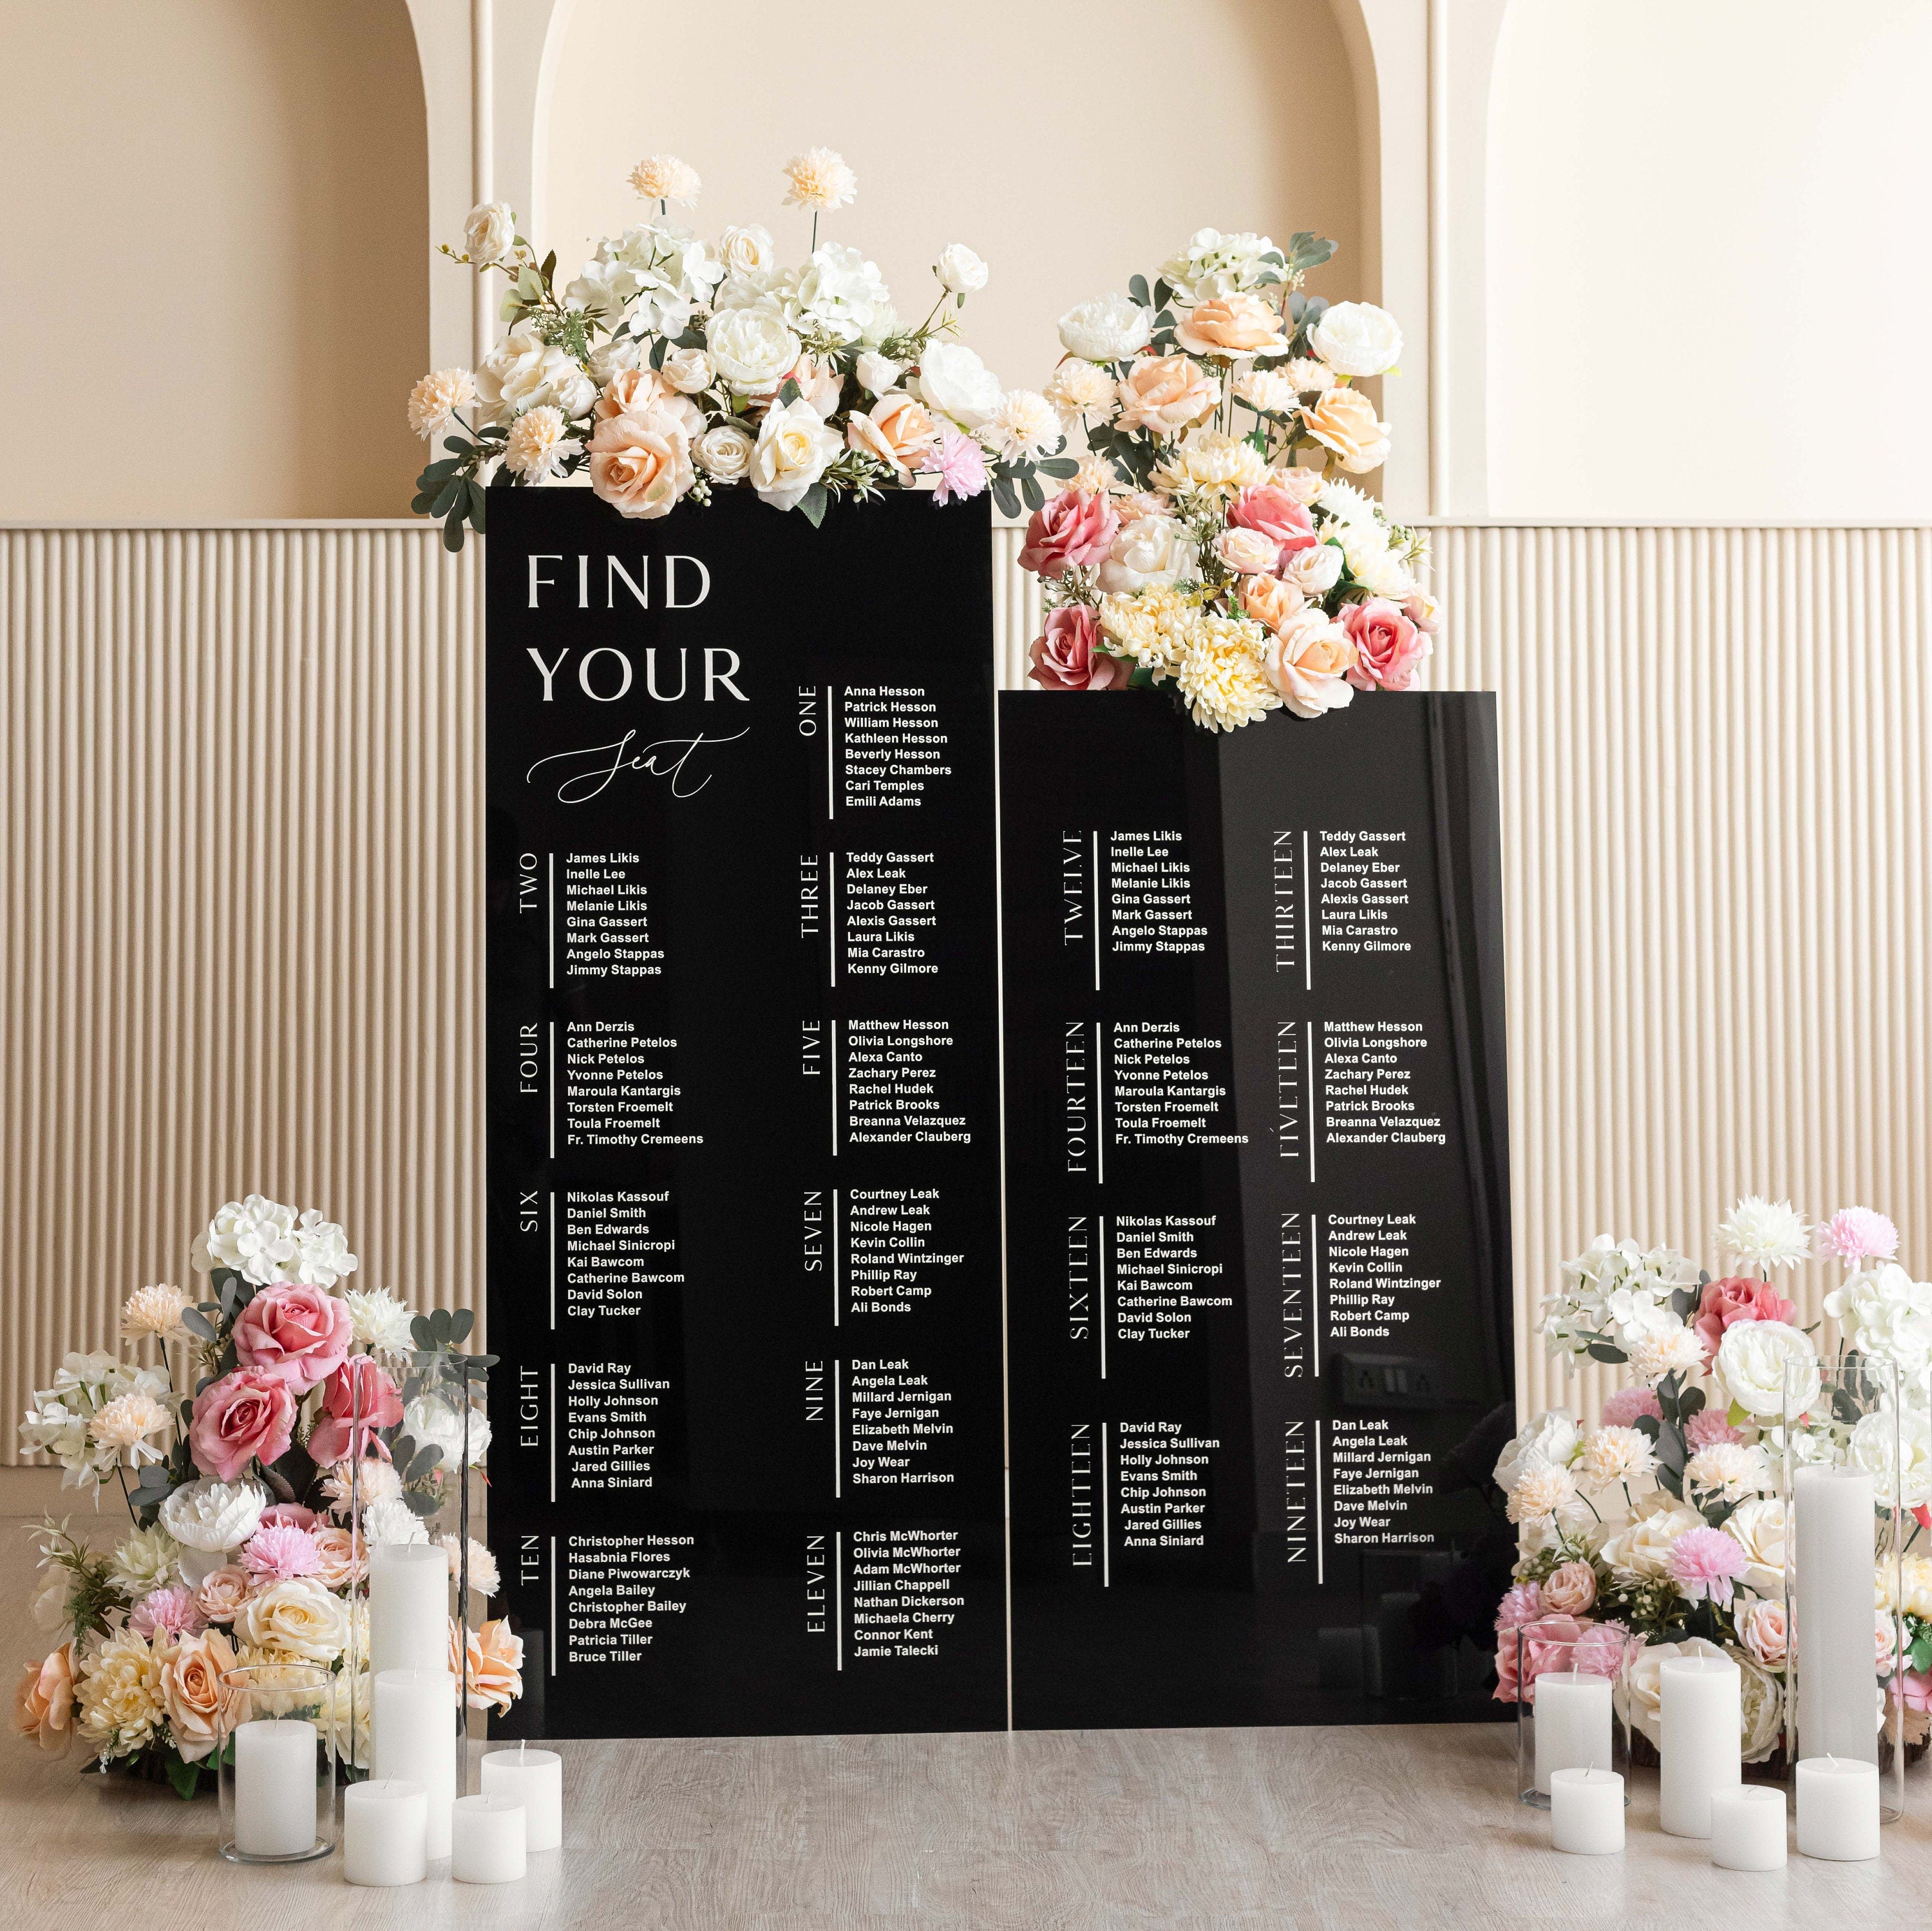 Wedding Bundle - Set of 3 Wedding Signs - Seating Chart Sign - Wedding Welcome Sign - Reception Signage - Black Acrylic Wedding Signage